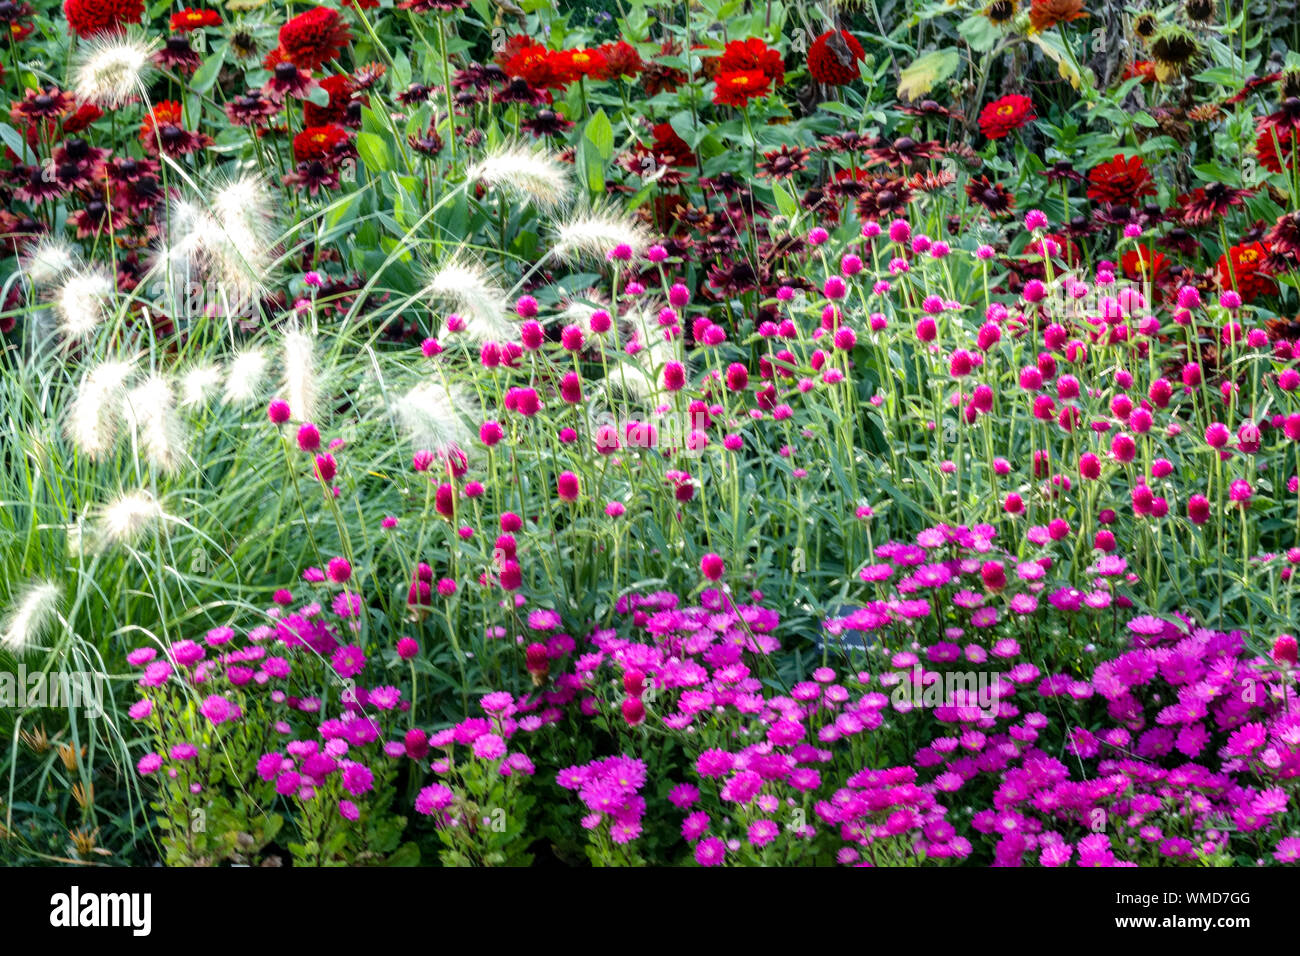 Schöne Gartenränder, bunte Blumen, gemischte einjährige und Stauden Pflanzen  im Sommer Blumenbeet, Pennisetum, Zinnias, Lila Aster Stockfotografie -  Alamy